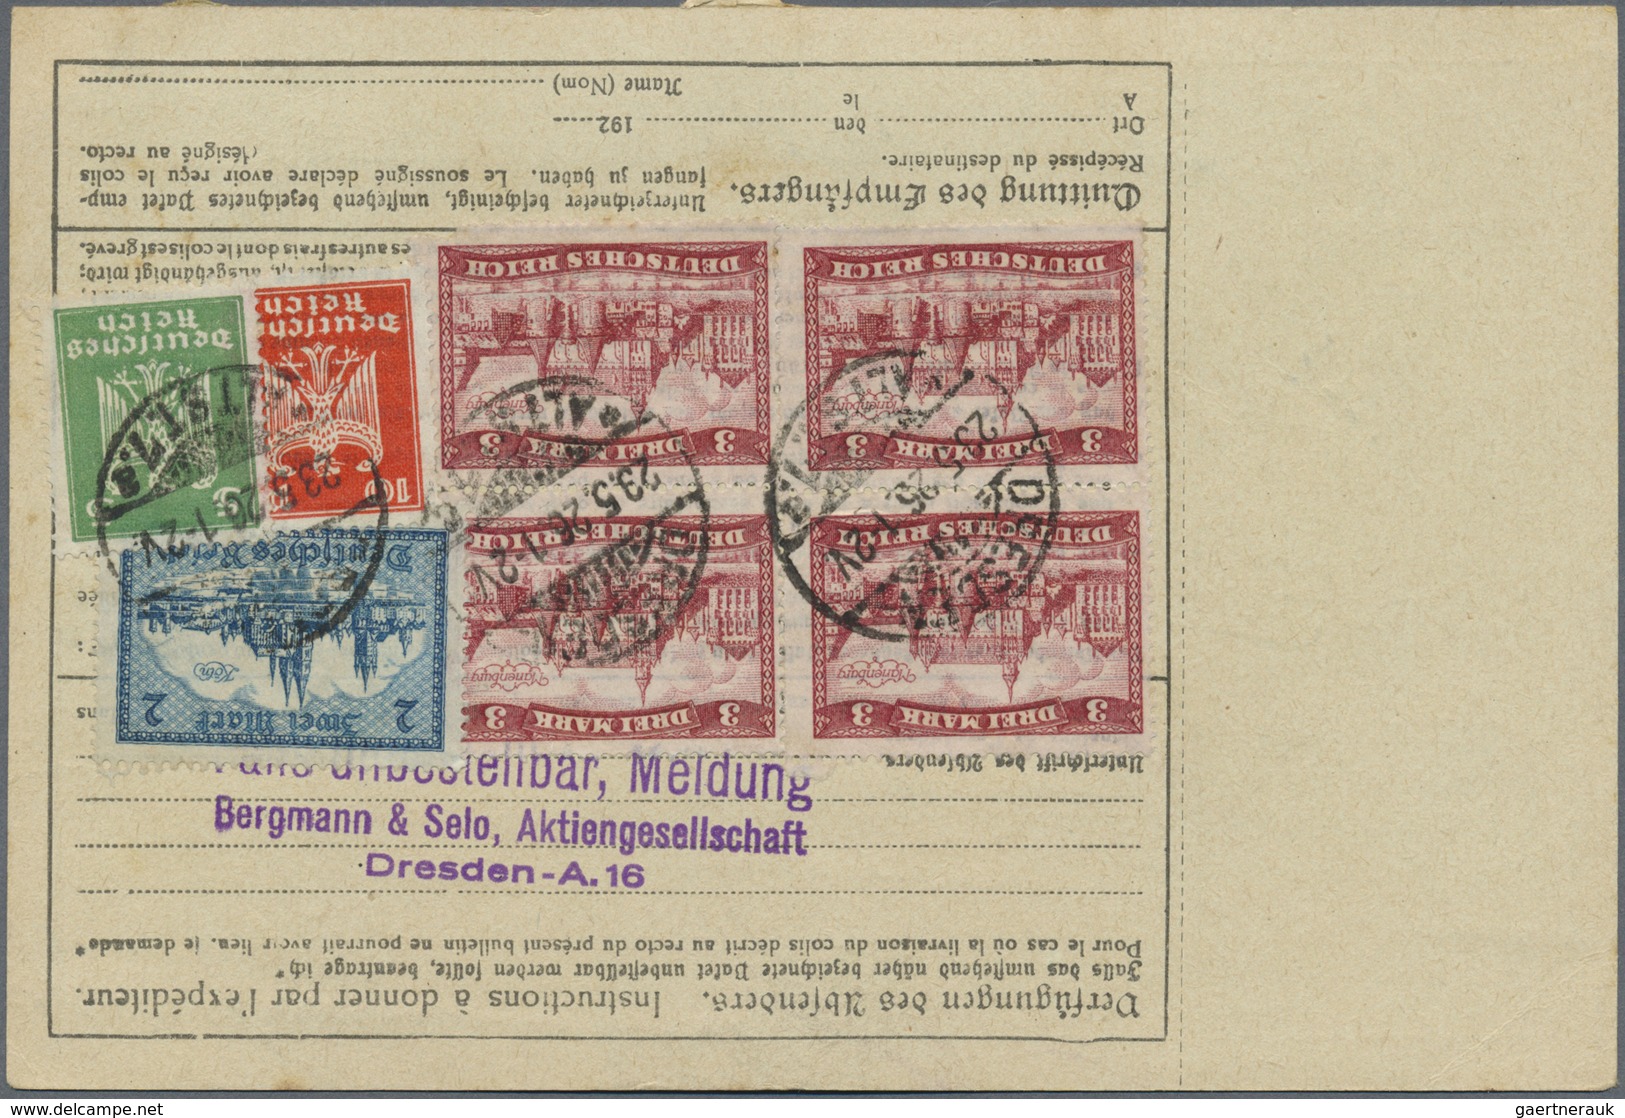 Br Deutsches Reich - Weimar: 1926: DRESDEN 7 / 23.5.26, Paketkarte Für Ein Paket "Eilboten" Und "dringe - Ongebruikt